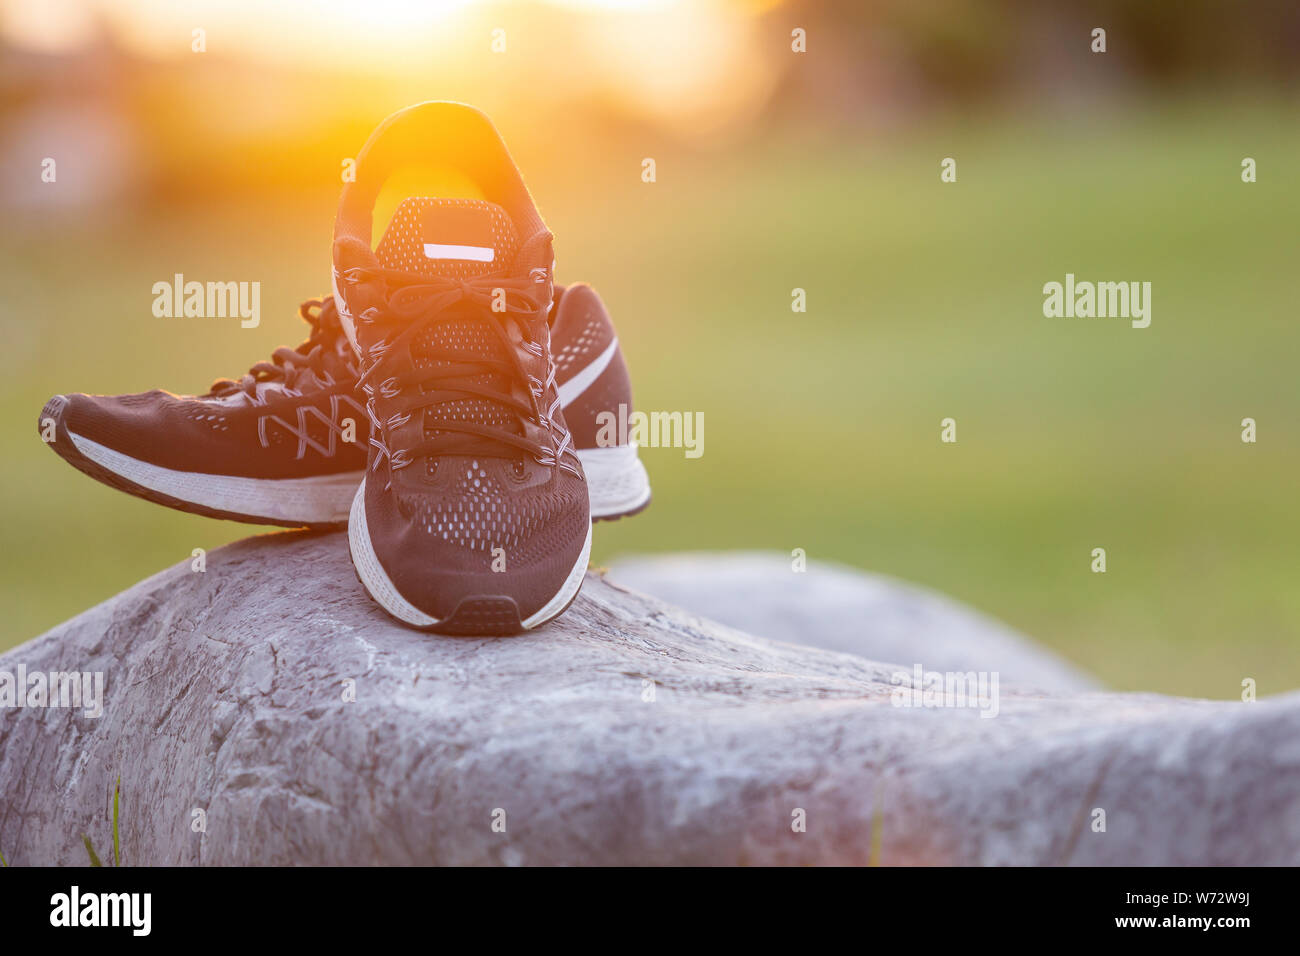 Close up neue Paare schwarz Schuhe/Sneaker Schuhe auf der grünen Wiese im Park bei Sonnenuntergang. Worm Ton, Sonnenlicht und lens flare Effekt w Stockfoto